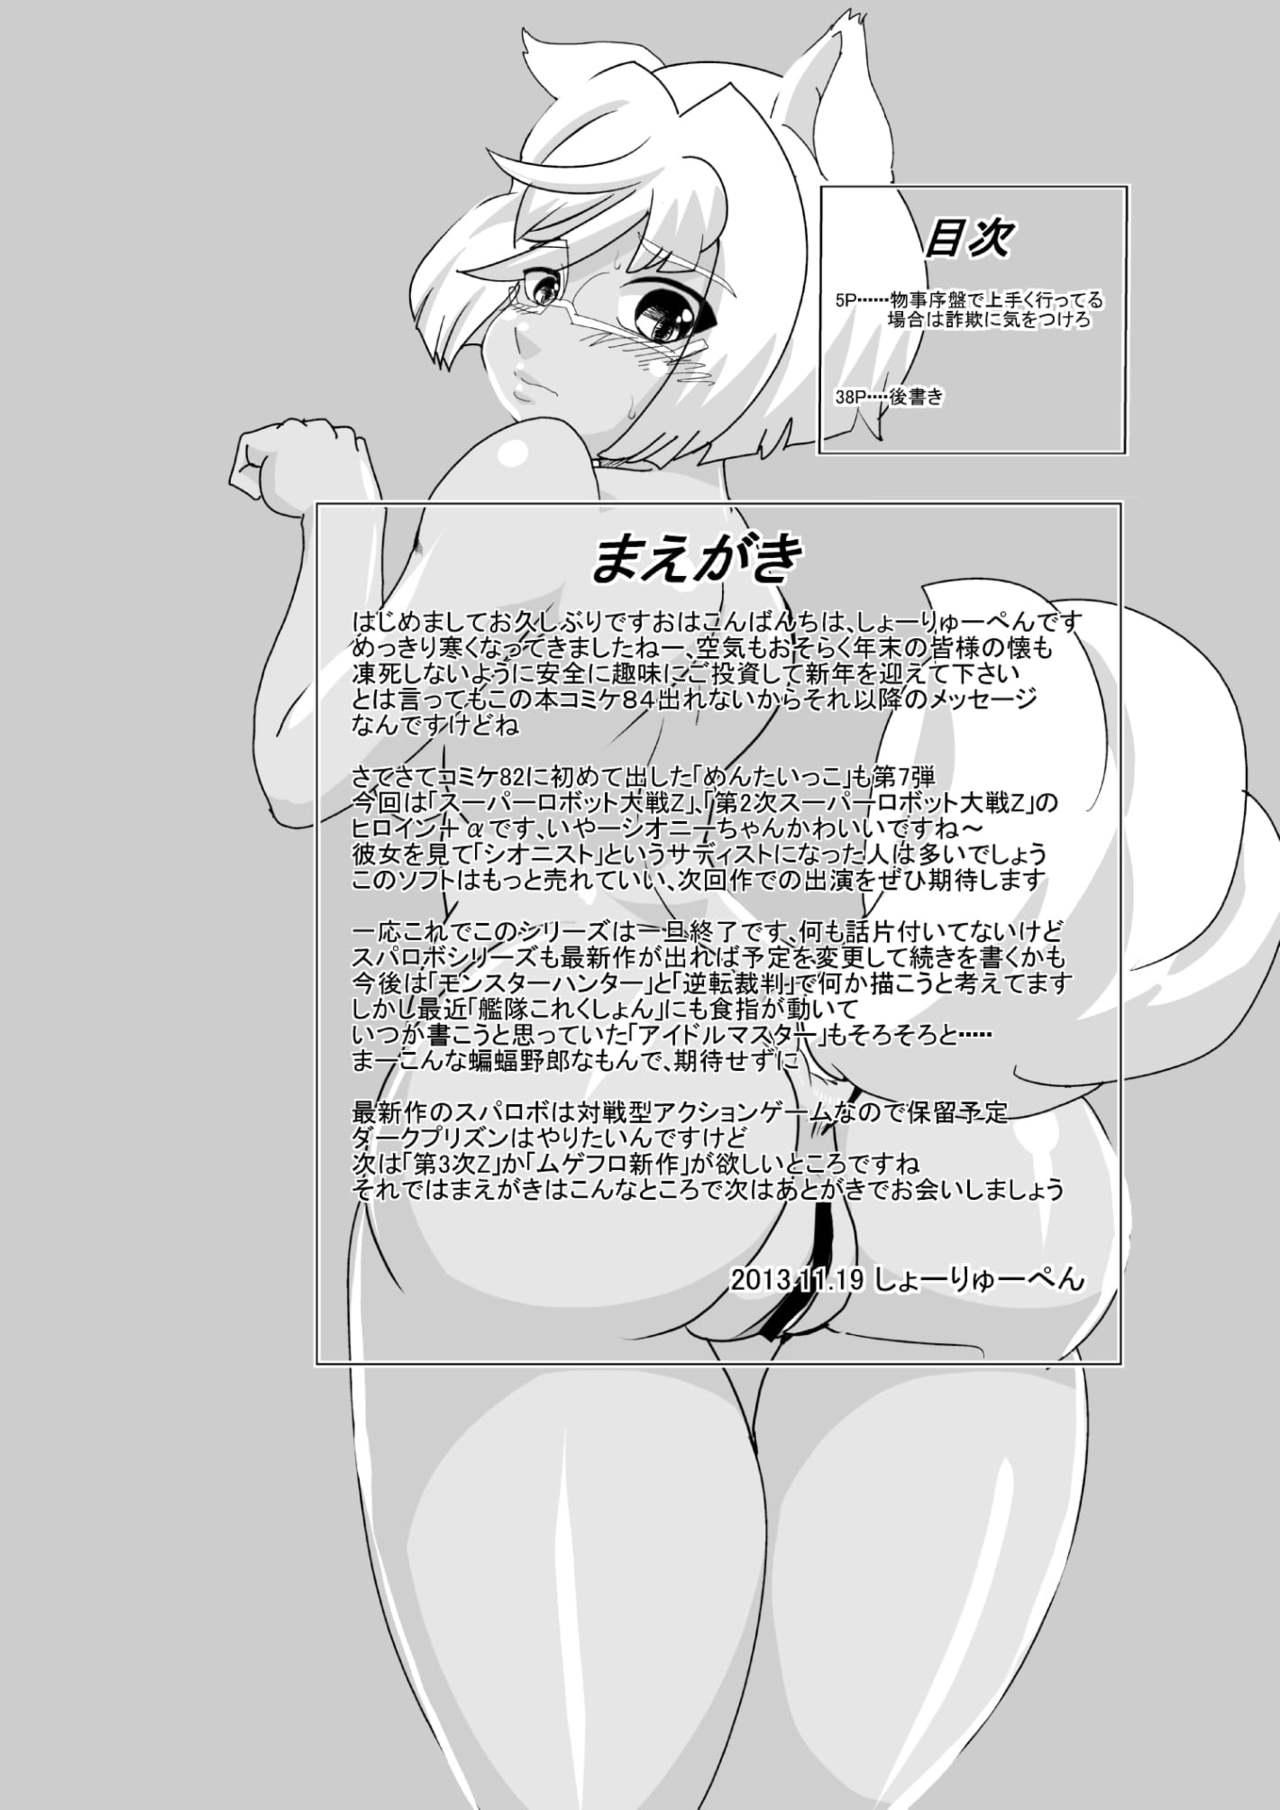 Freak [Seishimentai (Syouryuupen)] Mentananako Z - Ciony-chan Hakai Hen (Super Robot Taisen) - Super robot wars Chaturbate - Page 4